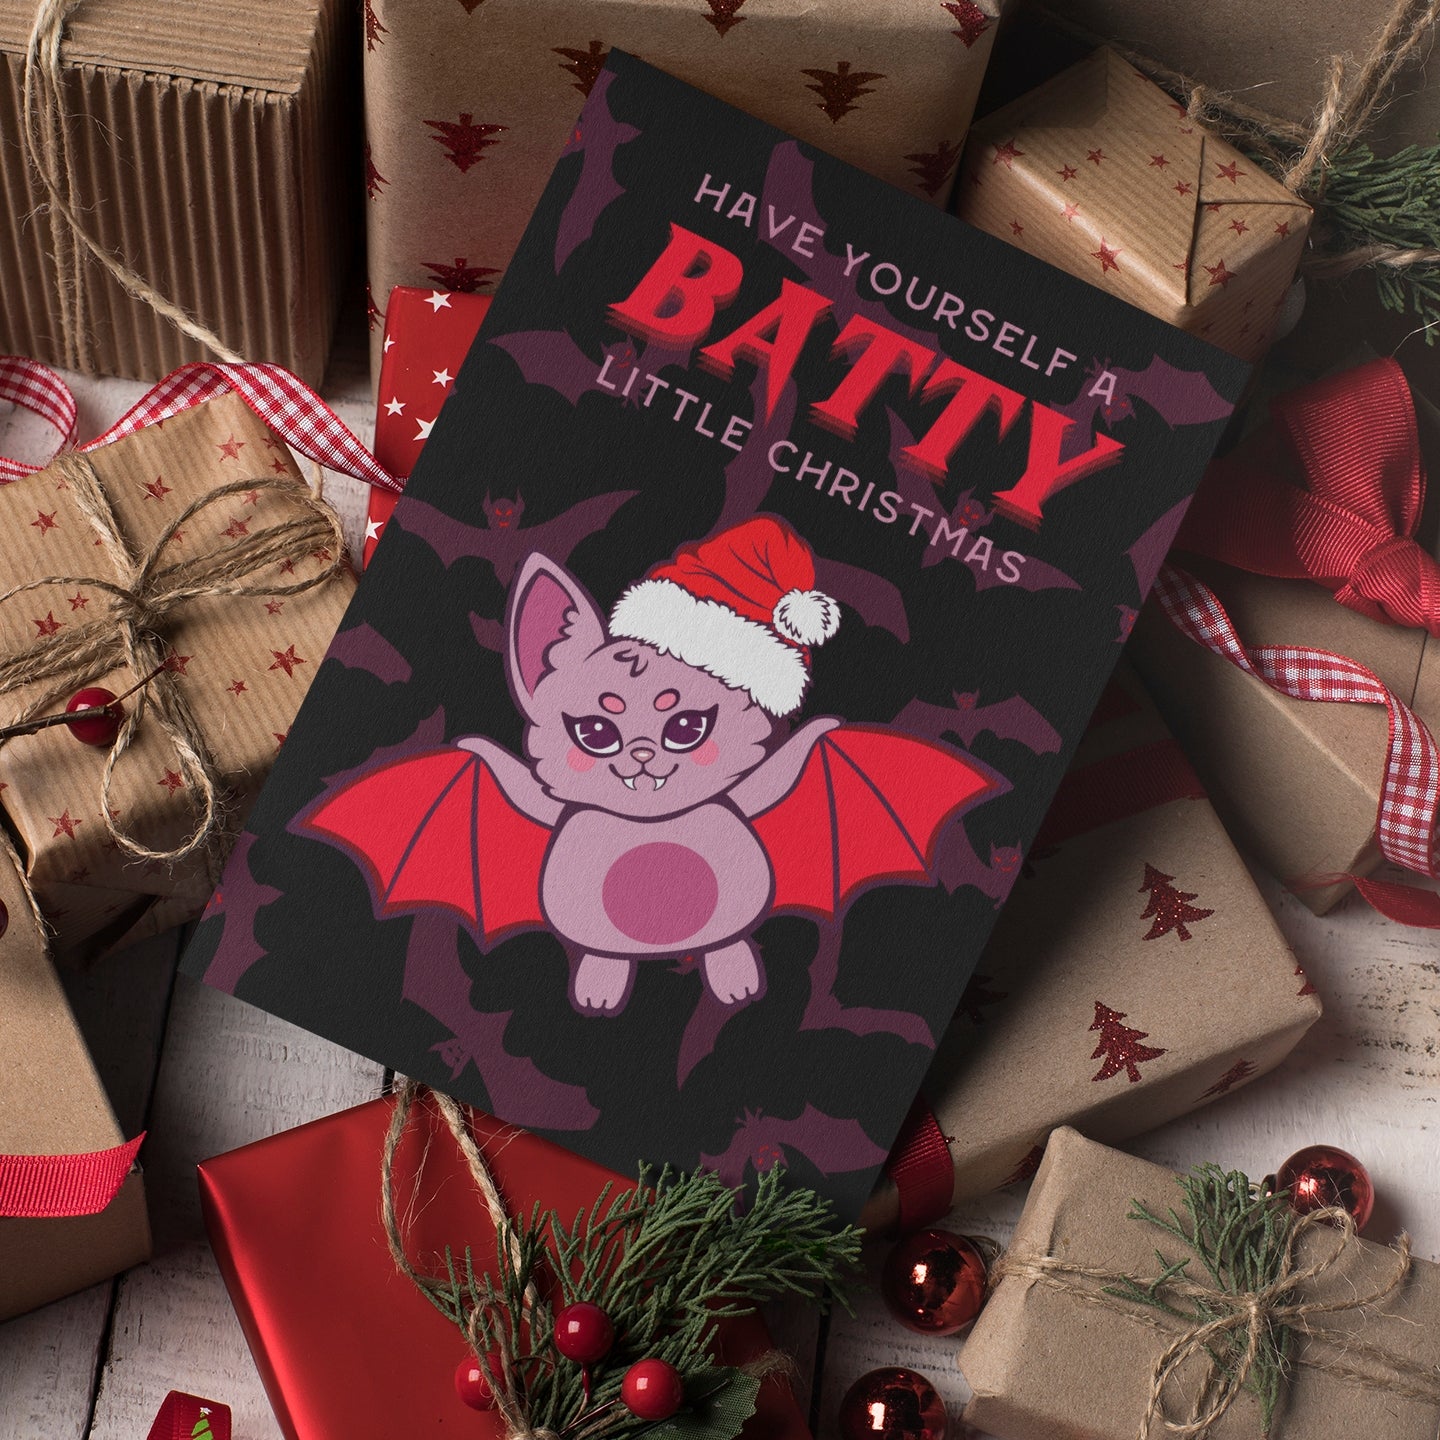 Batty Christmas Card